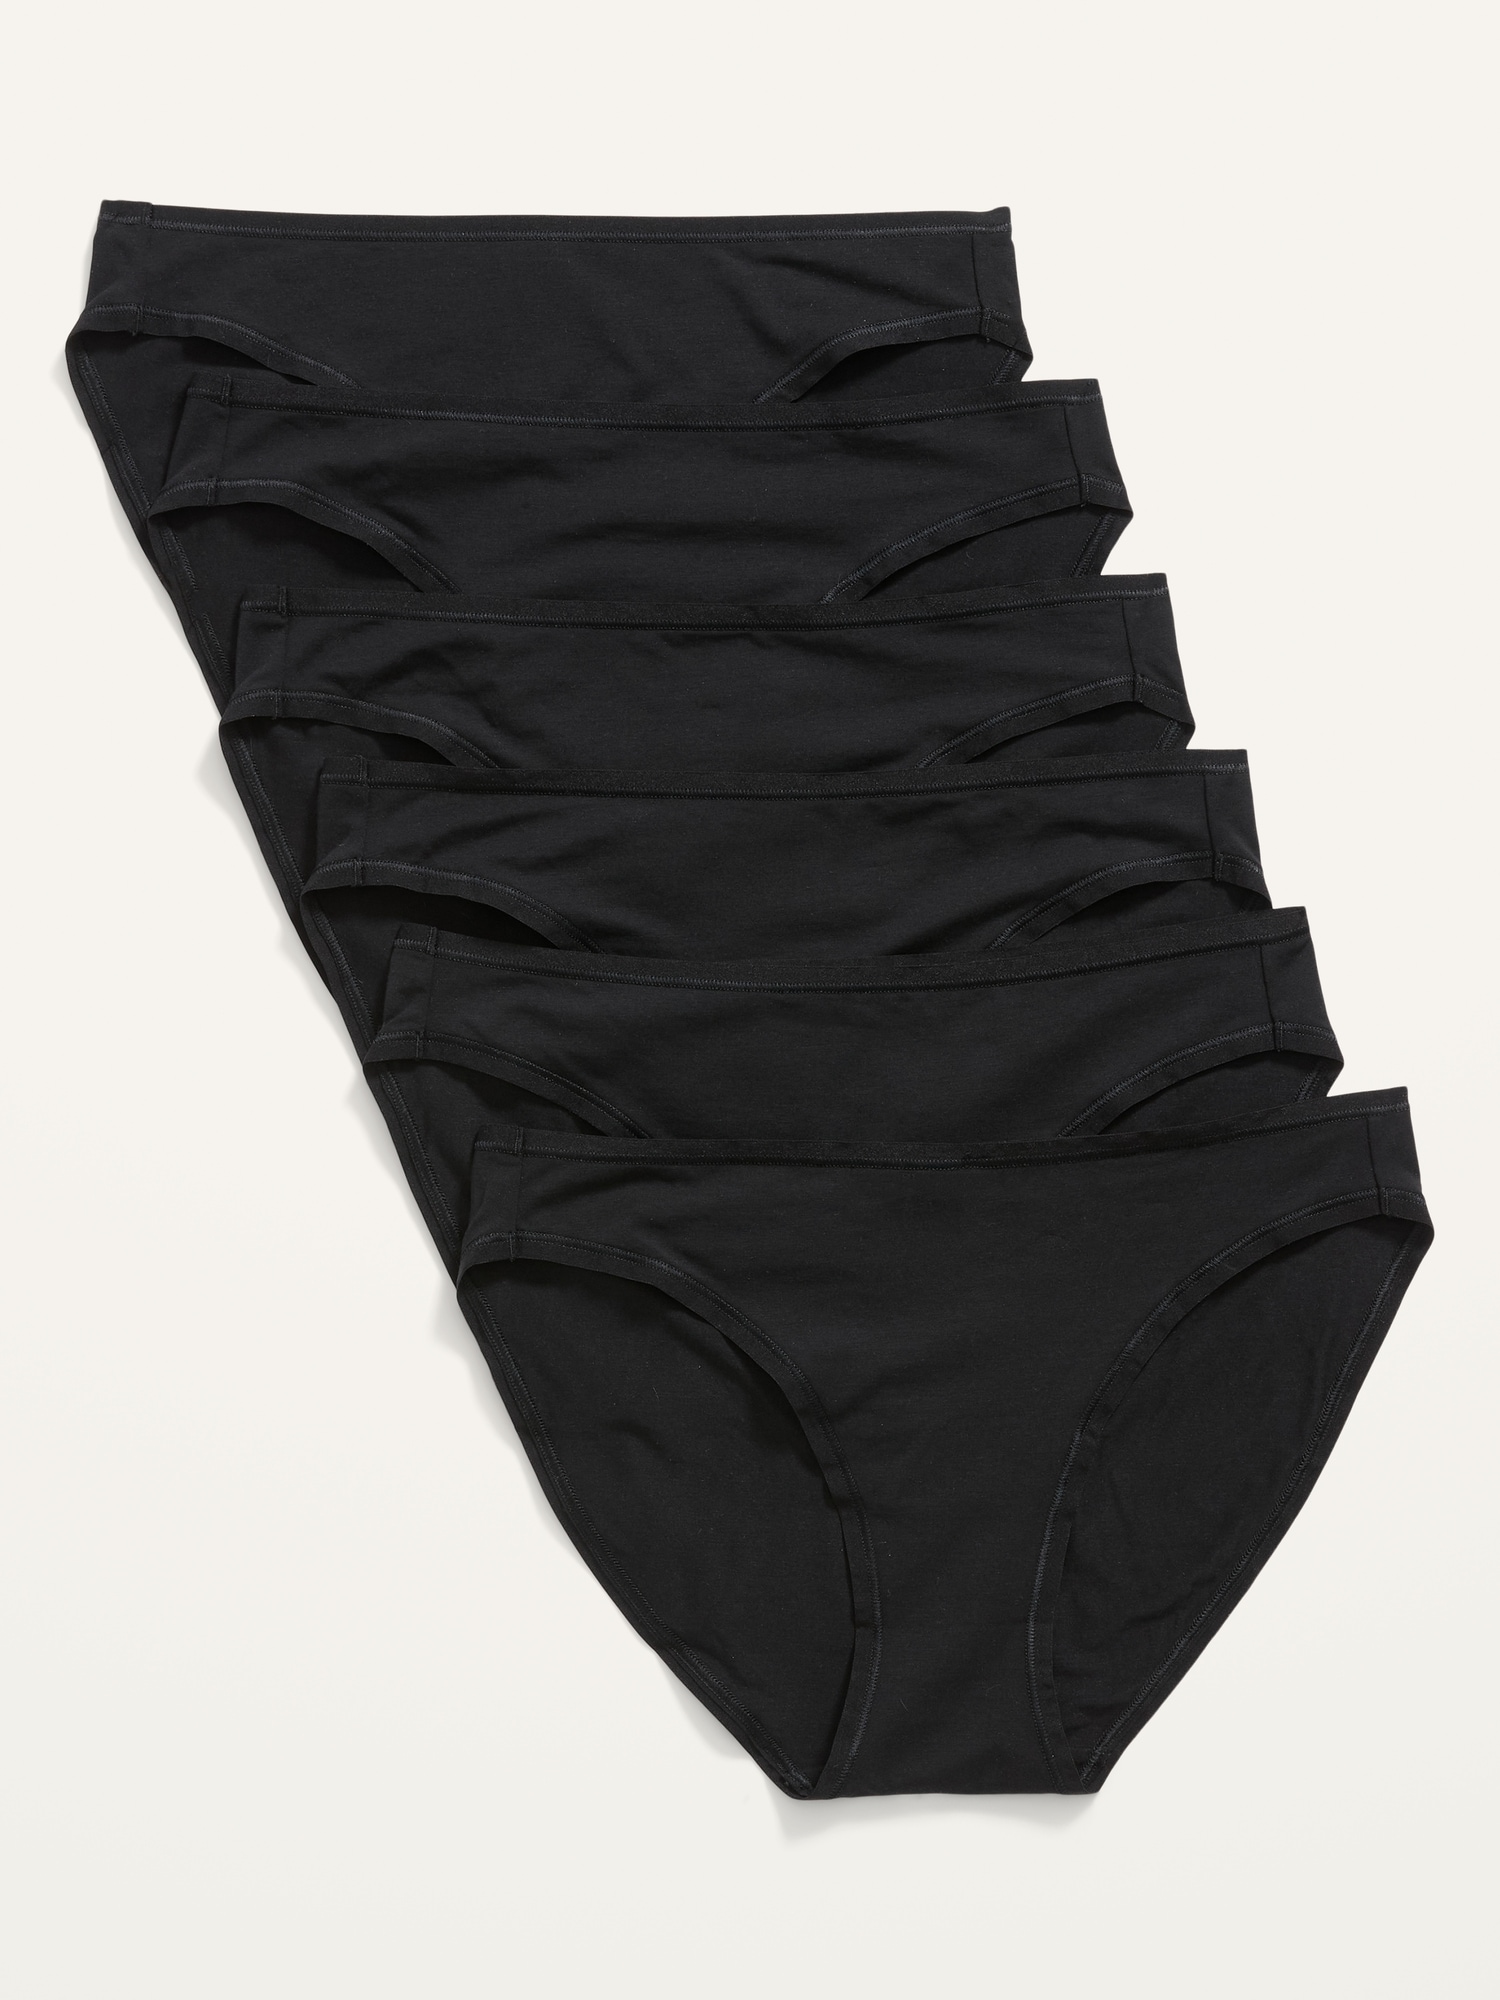 6-Pack Cotton Bikini Panty - Black